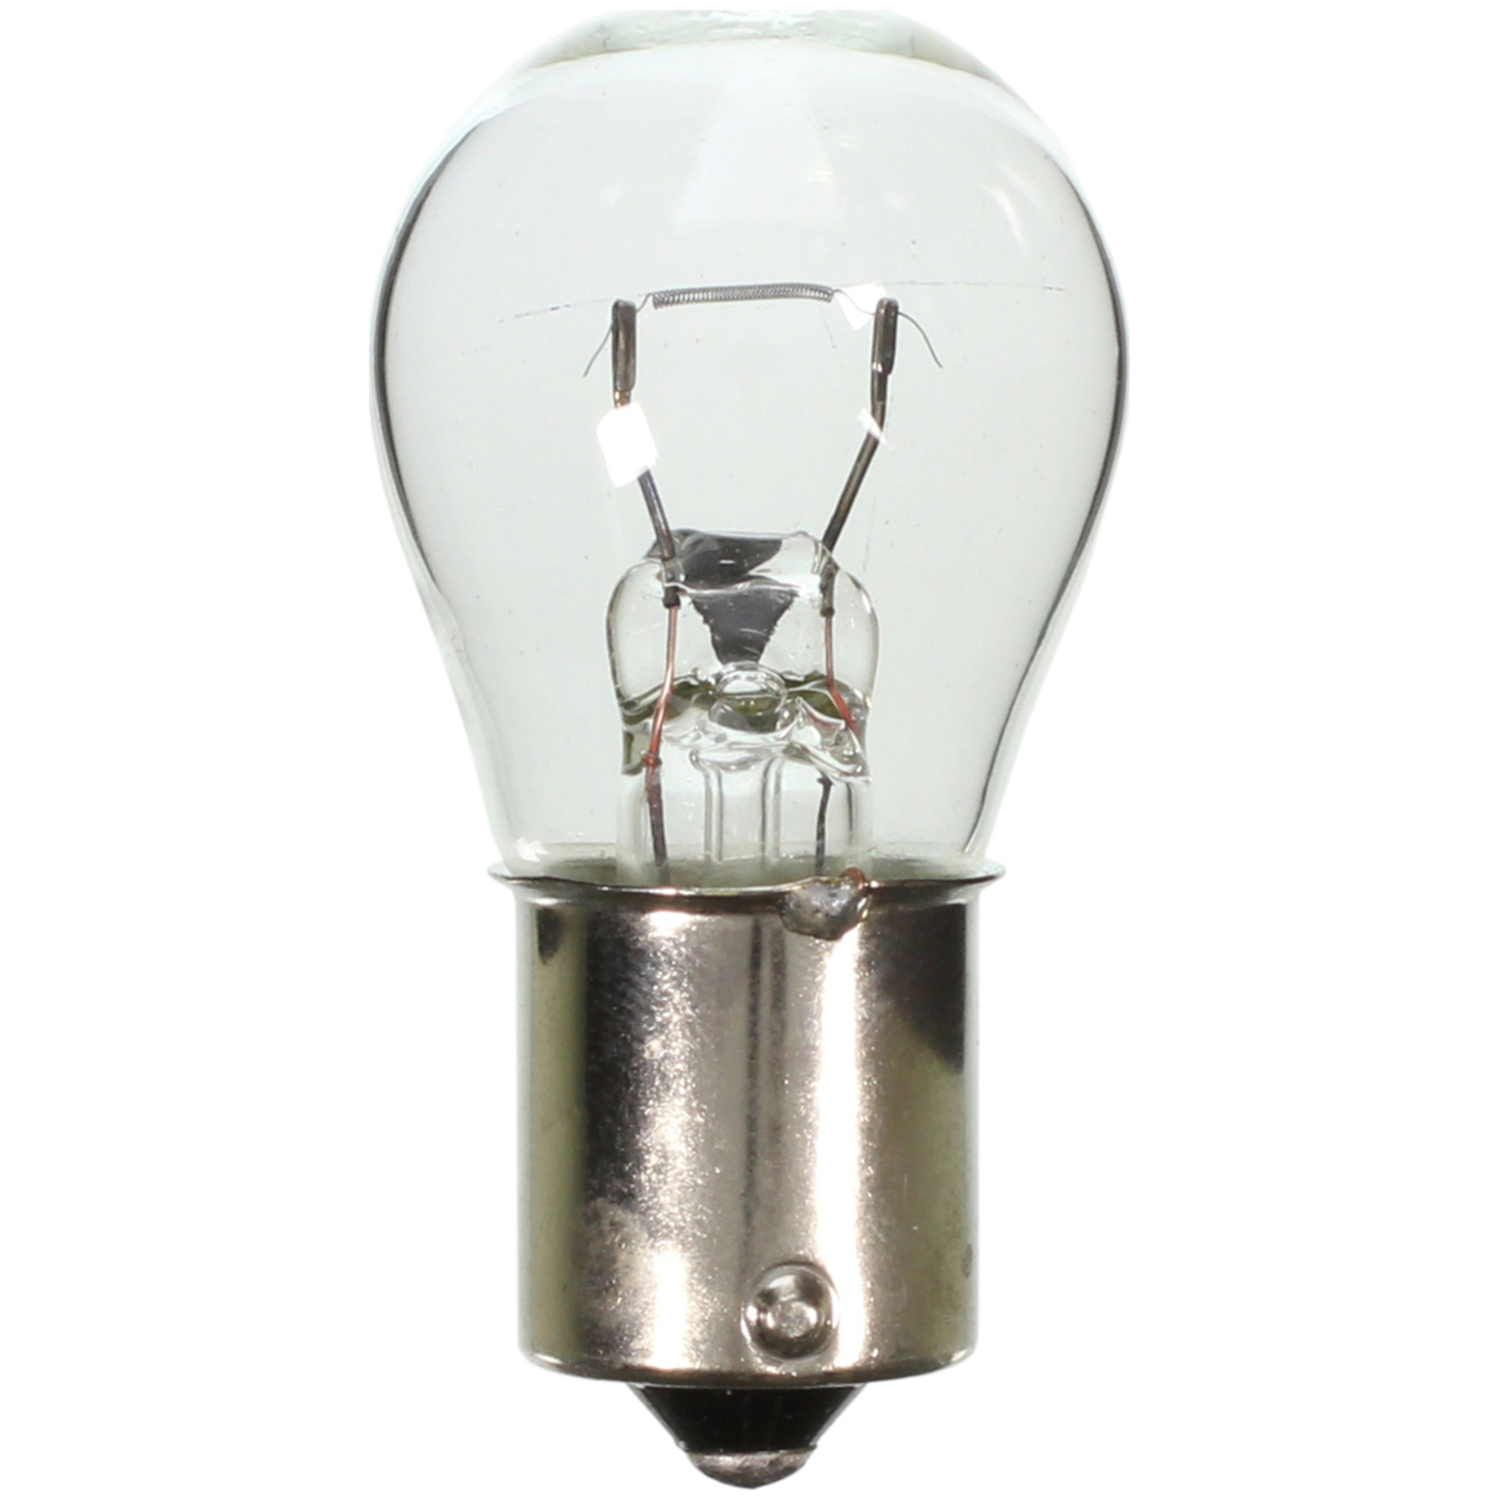 WAGNER LIGHTING - Back Up Light Bulb - WLP 1141